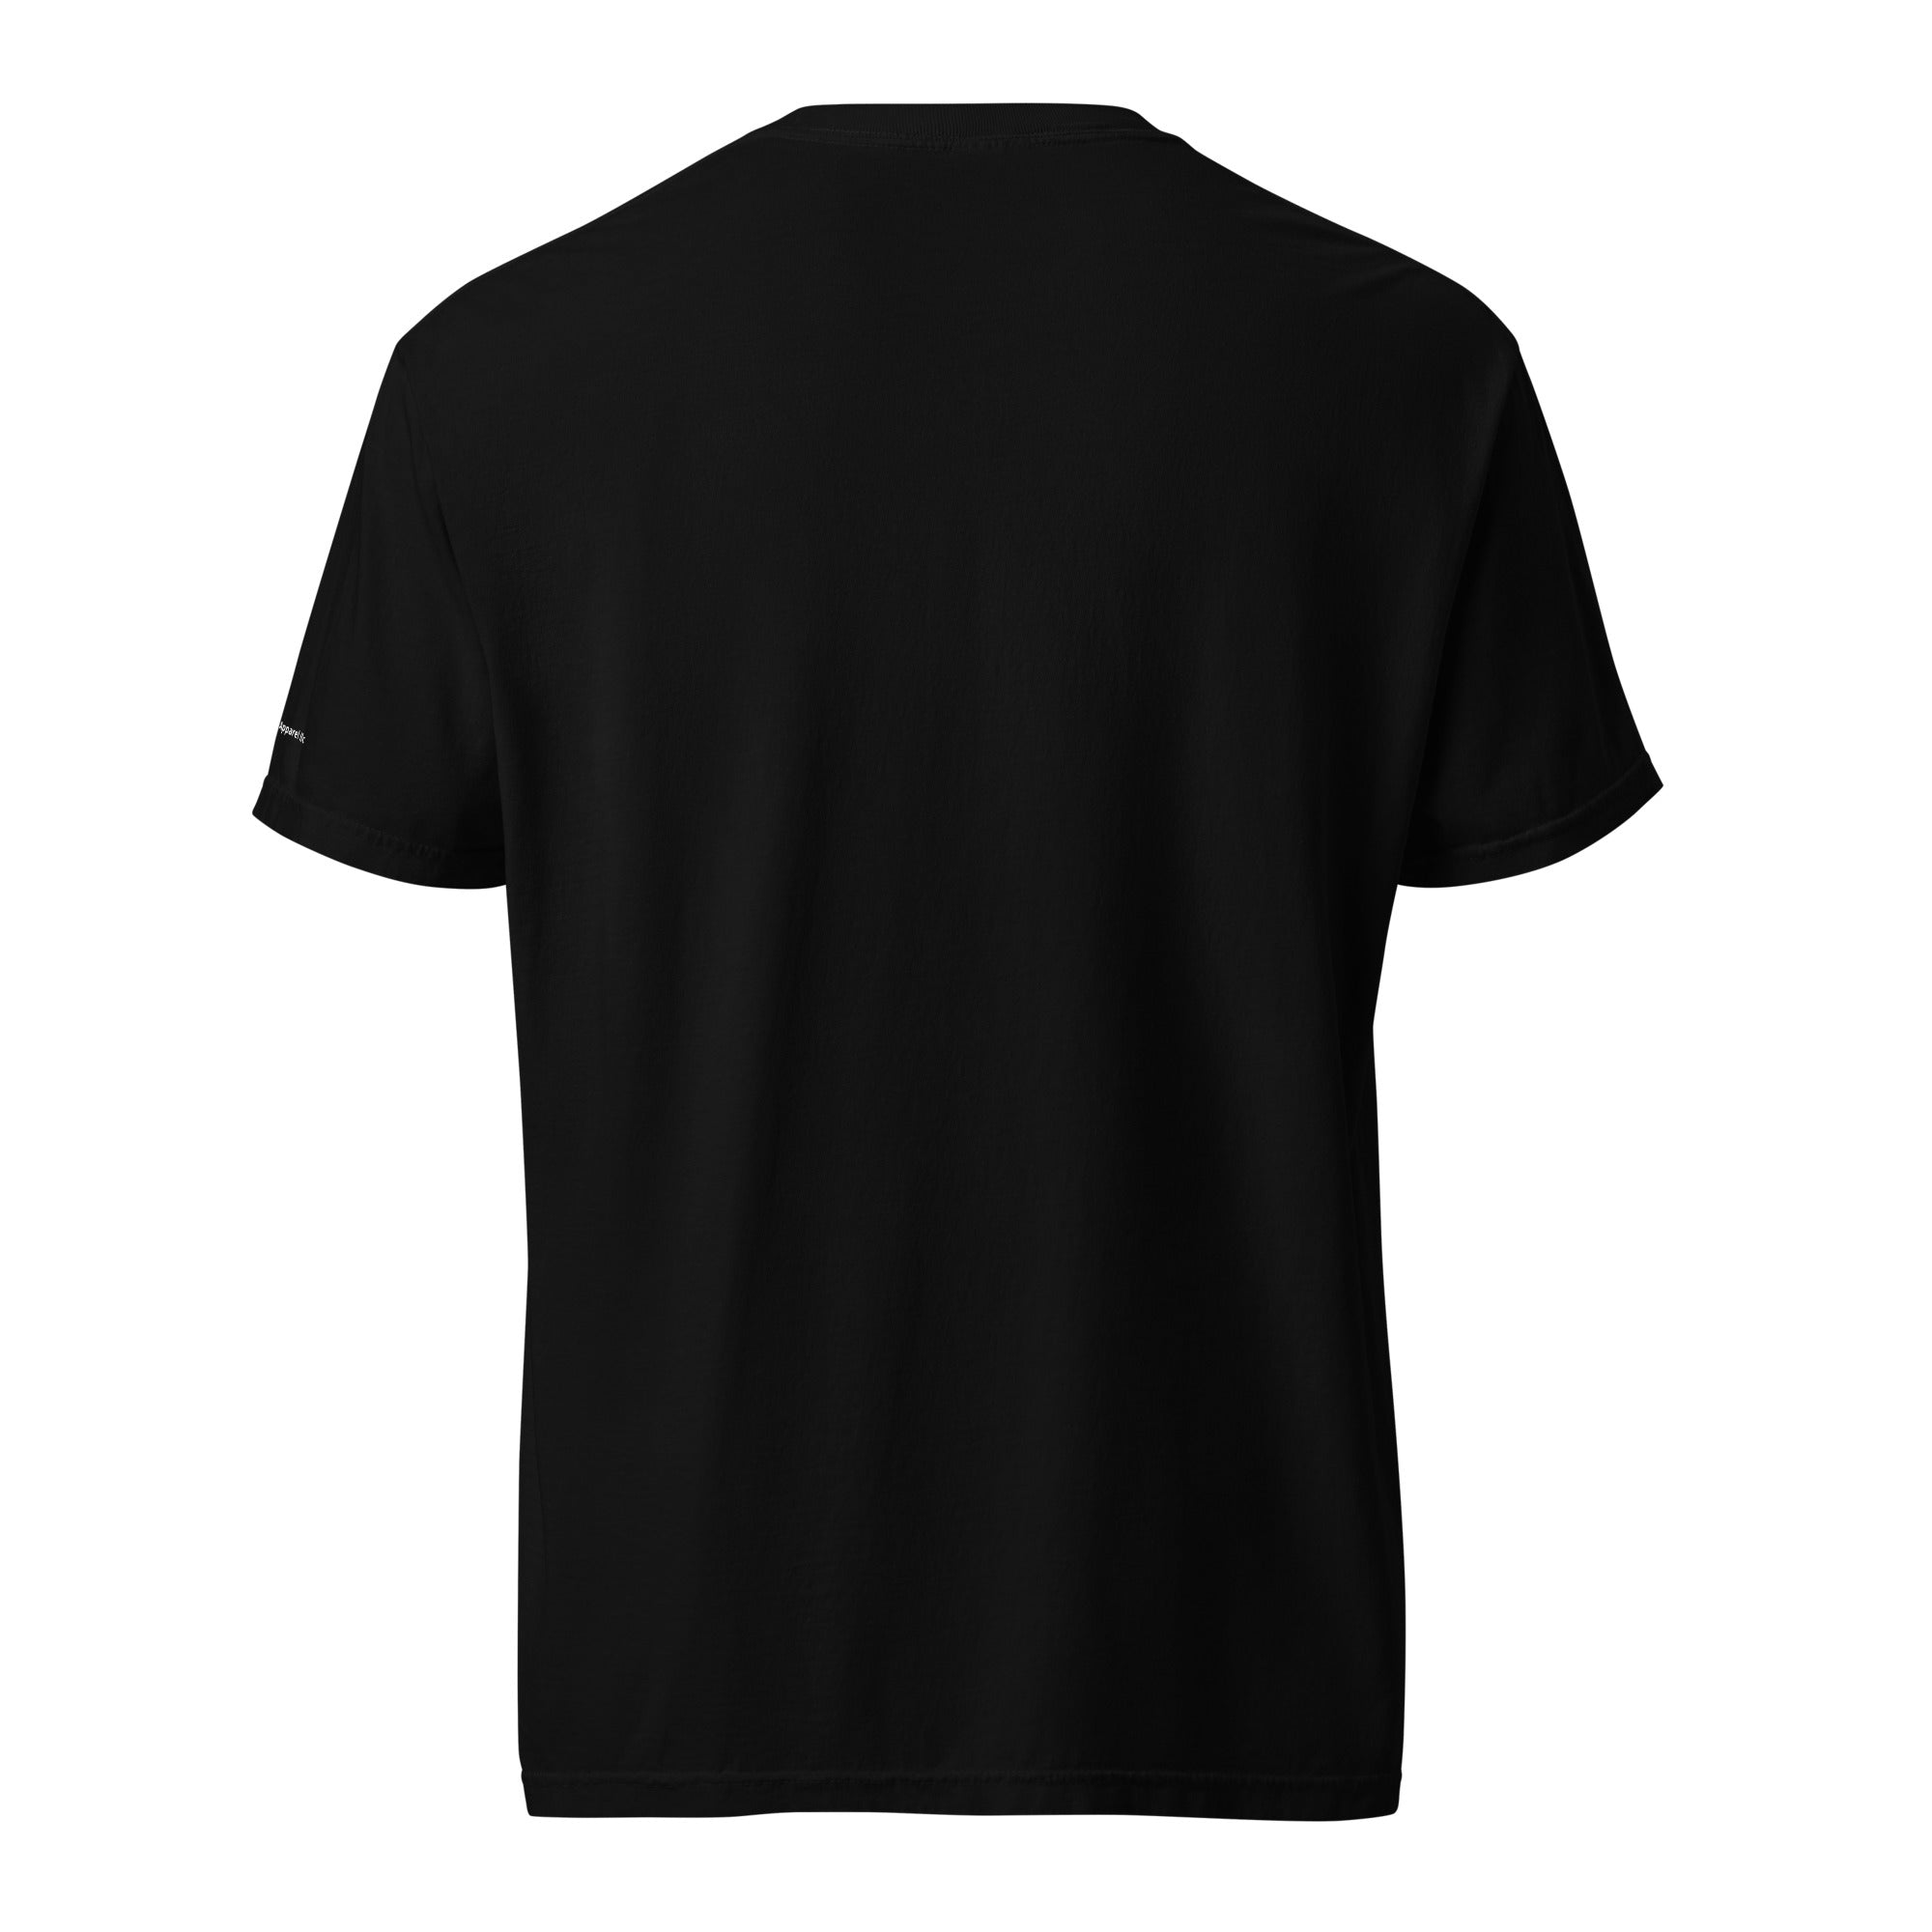 Goalie- Mens garment-dyed heavyweight t-shirt